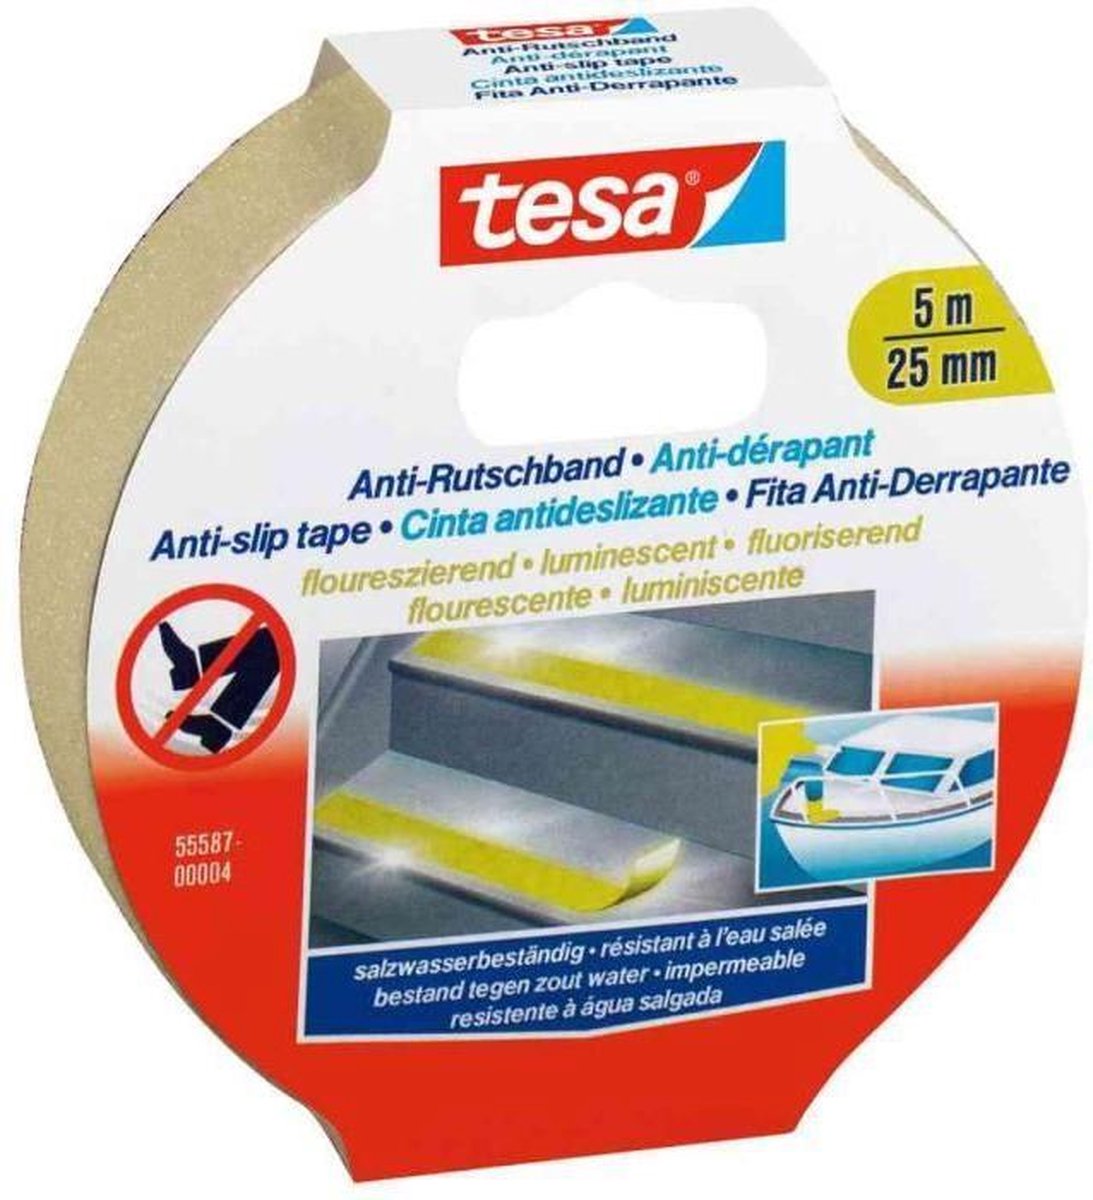 Tesa 55580-00000-11 Anti-slip tape (l x b) 5 m x 25 mm 5 m - Blanco